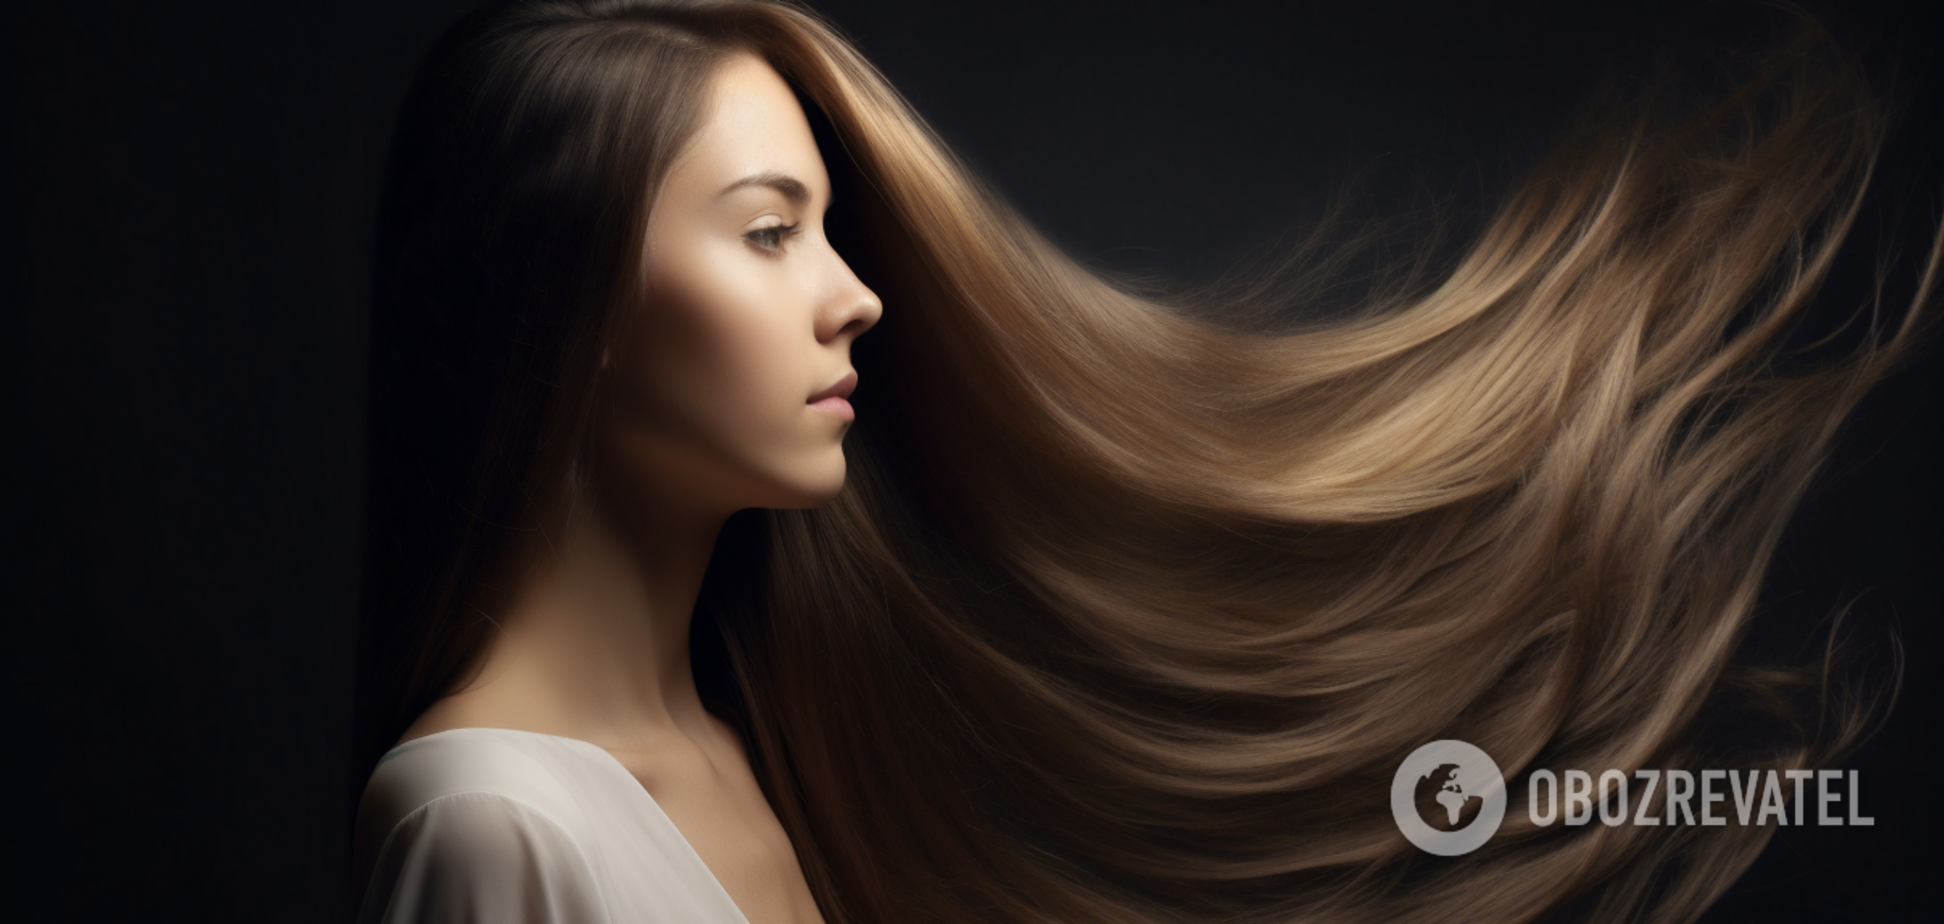 Волосы лучше сушить феном или воздухом? Эксперты решили женскую дилемму